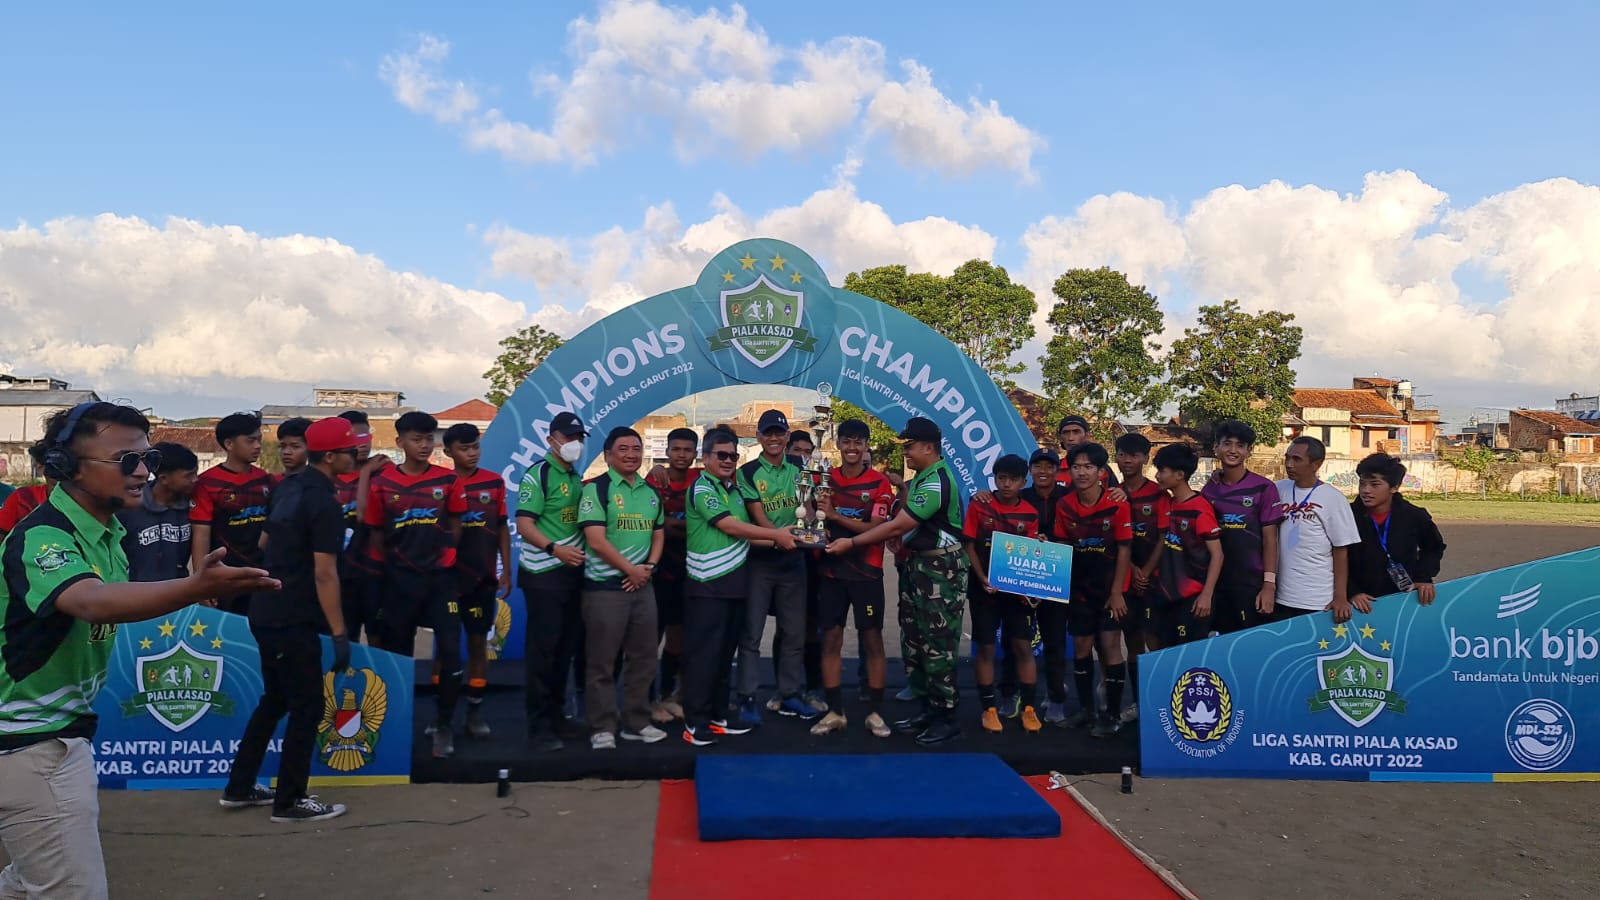 Bupati Garut Tutup Gelaran Liga Santri Piala KASAD Tahun 2022 tingkat Kabupaten Garut